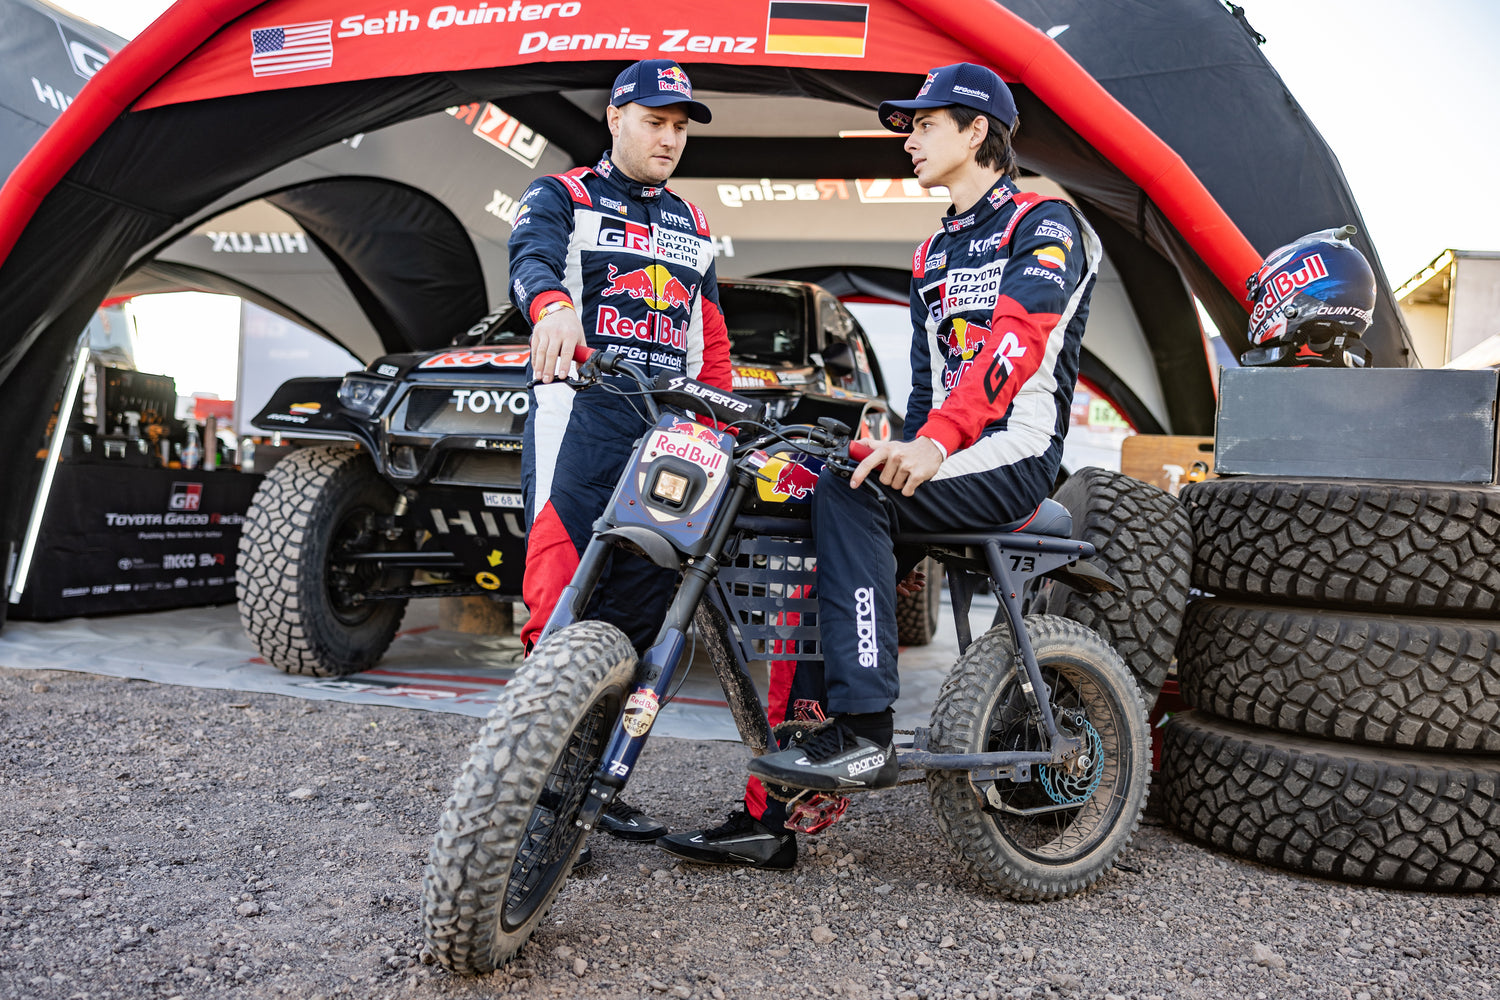 SUPER73 Takes on Dakar Red Bull Racing